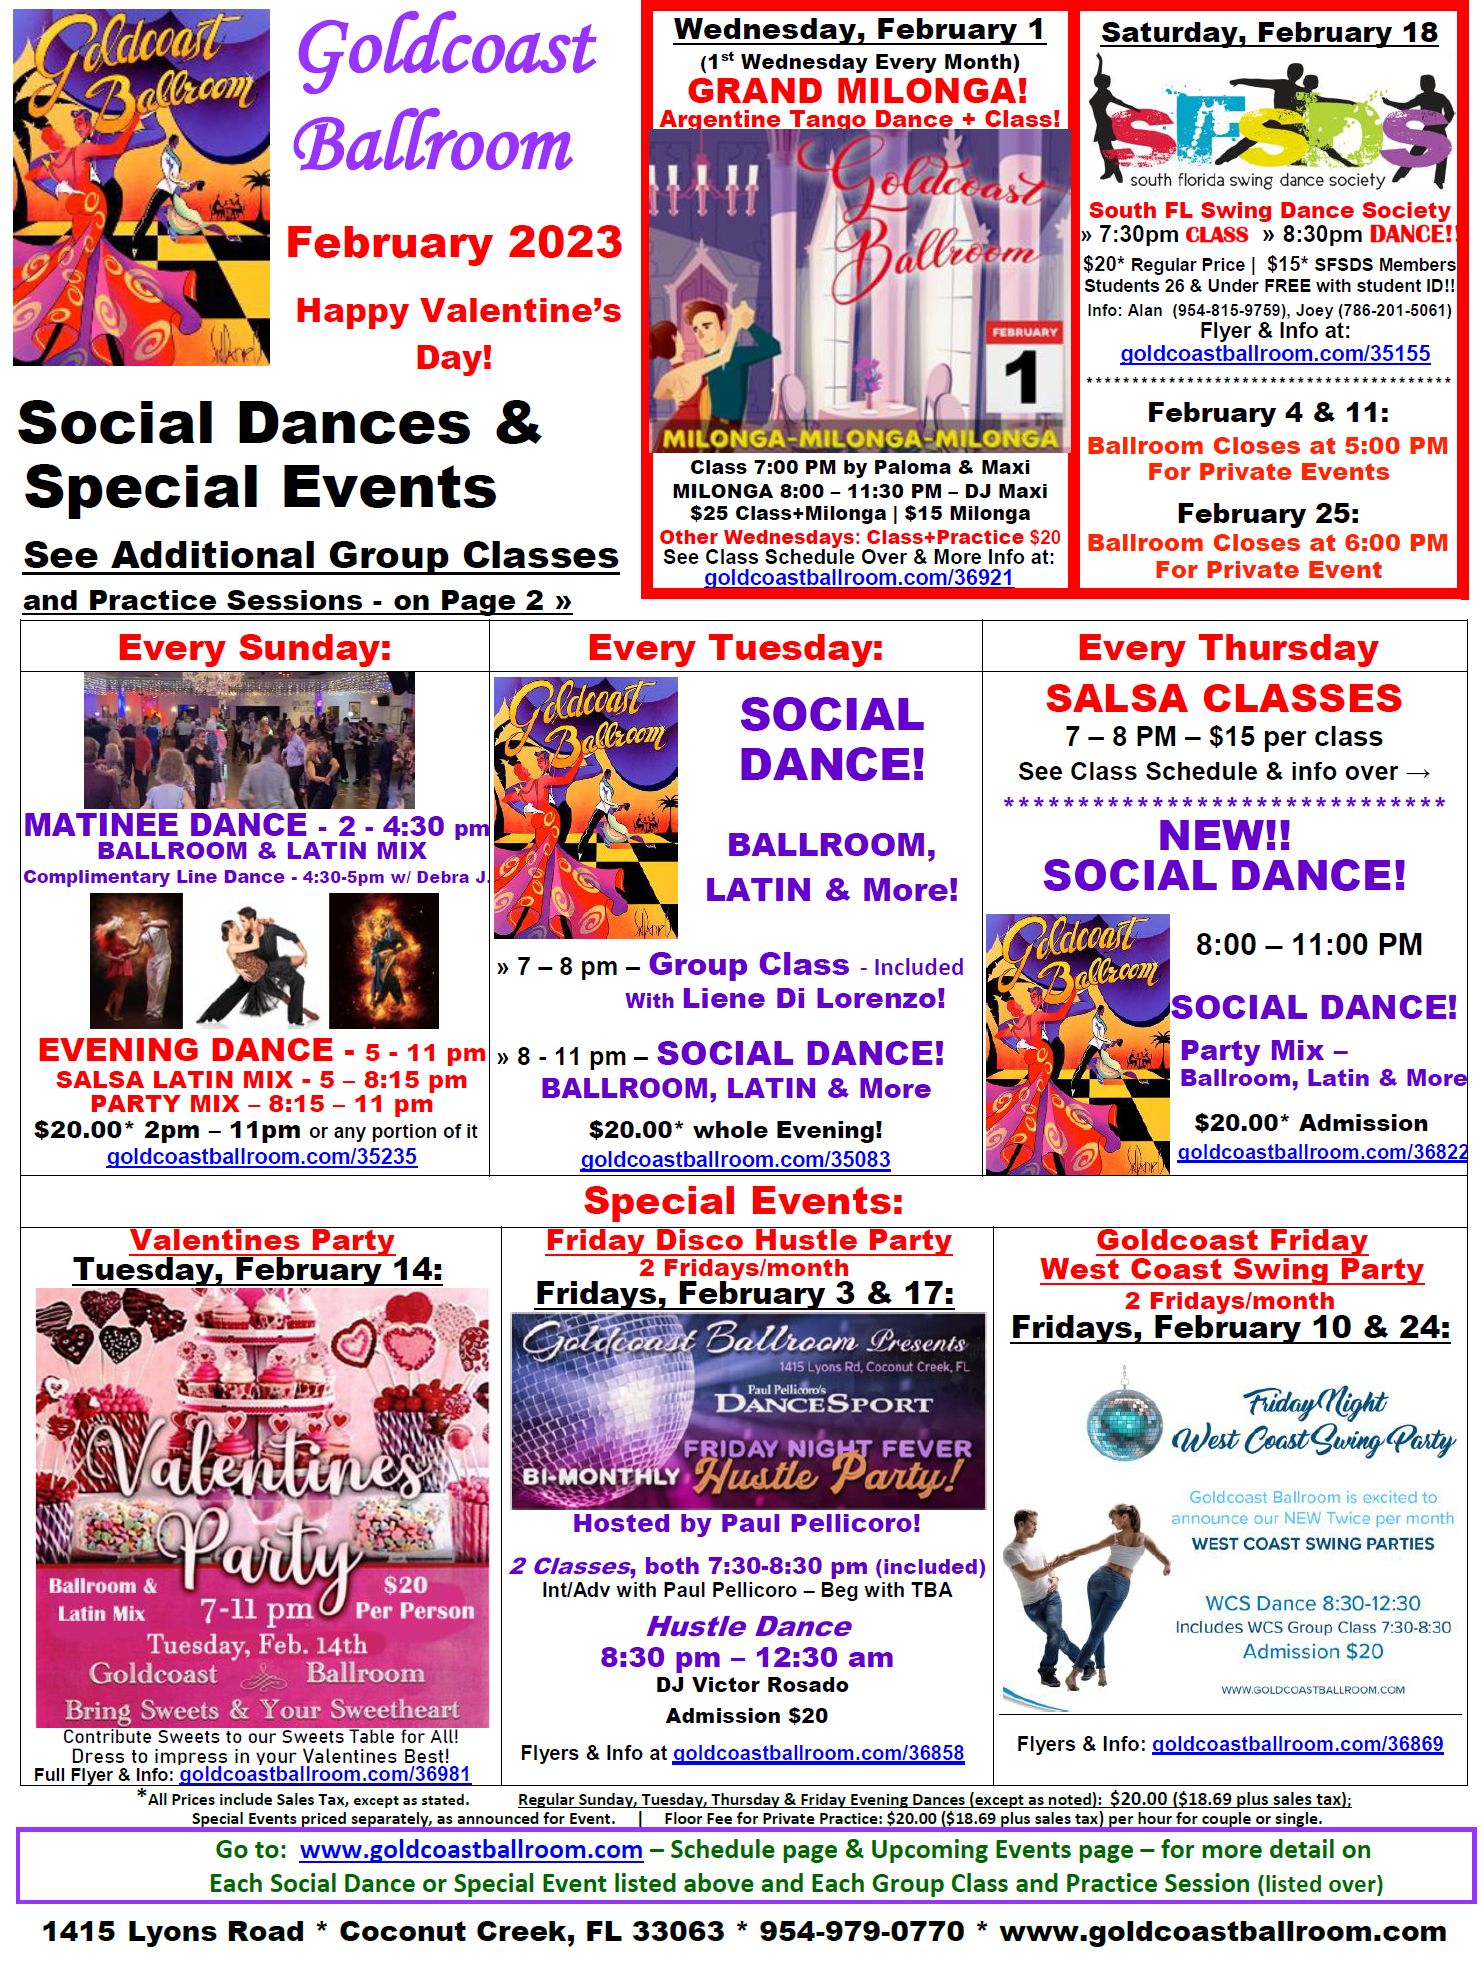 Goldcoast Ballroom February 2023 Calendar - Social Dances & Special Events